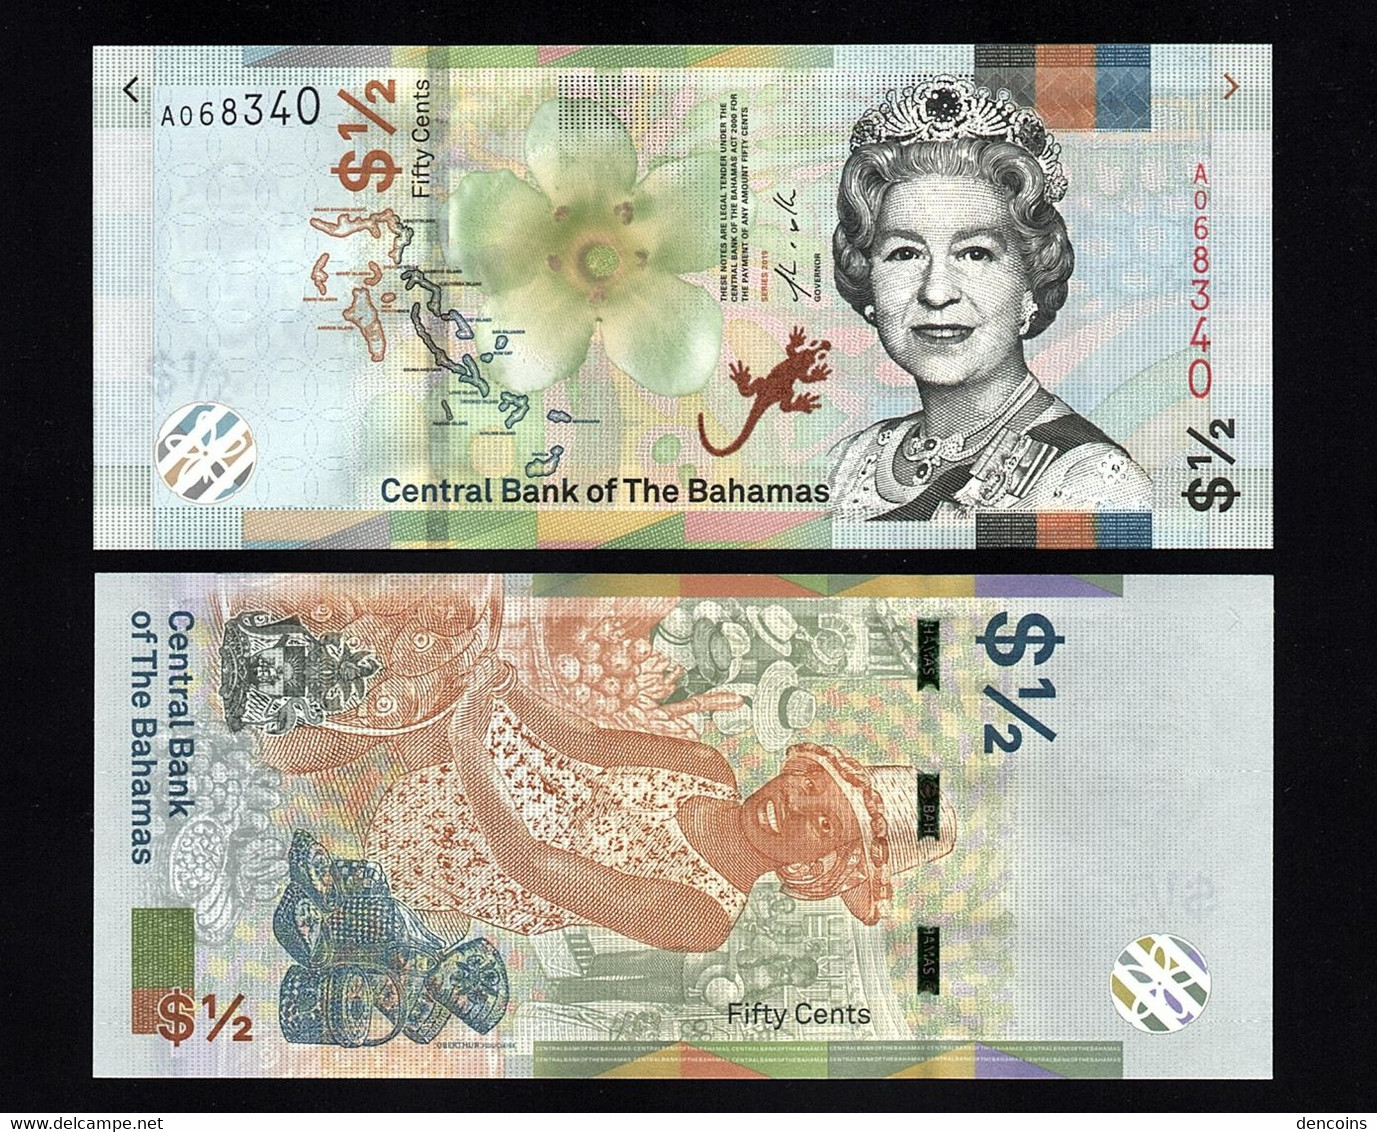 BAHAMAS  P-NEW  1/2 DOLLARS  50 CENTS  2019  -A-  UNC  NEUF  SIN CIRCULAR - Bahamas